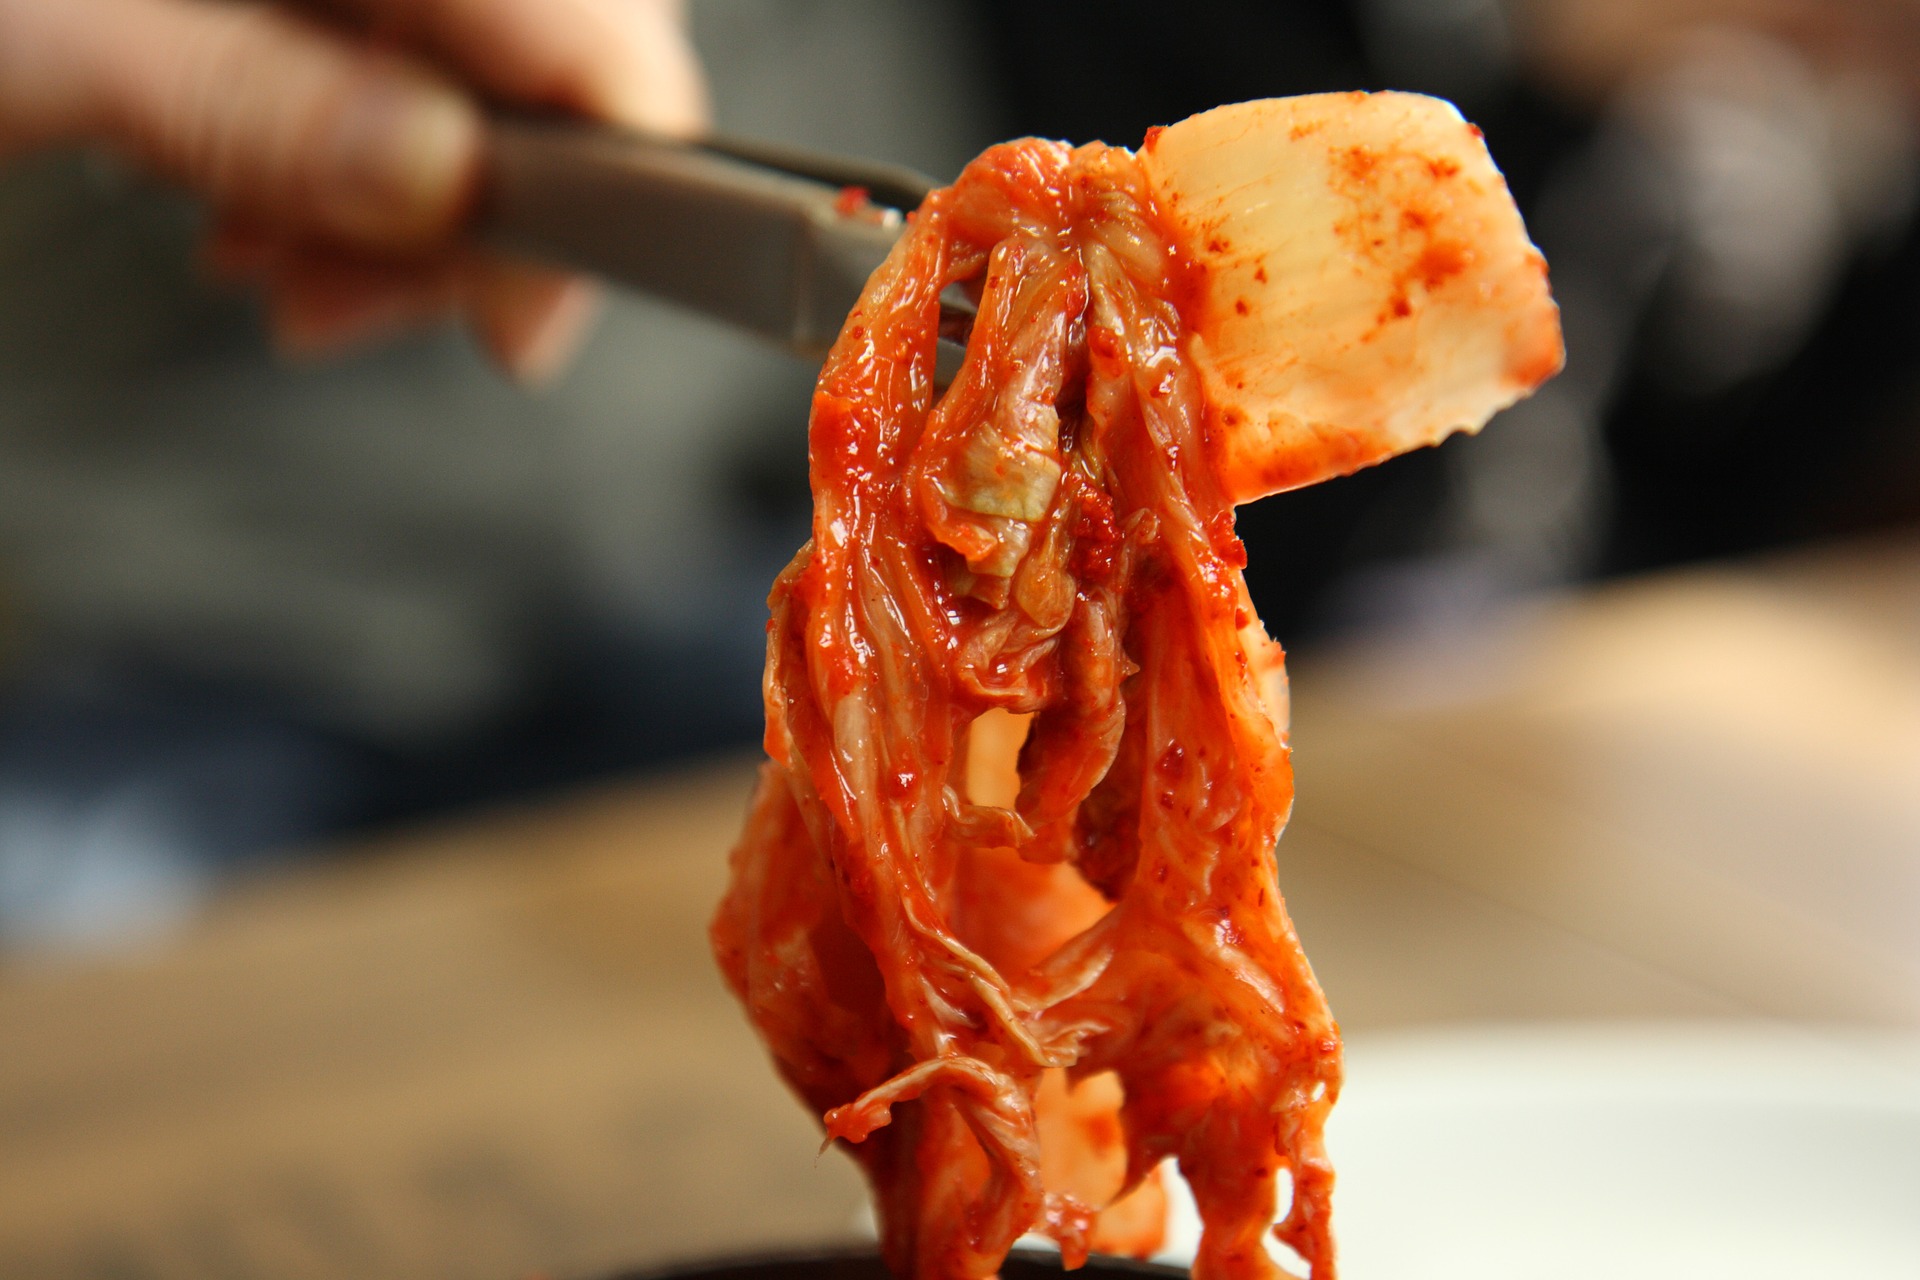 kimchi dish